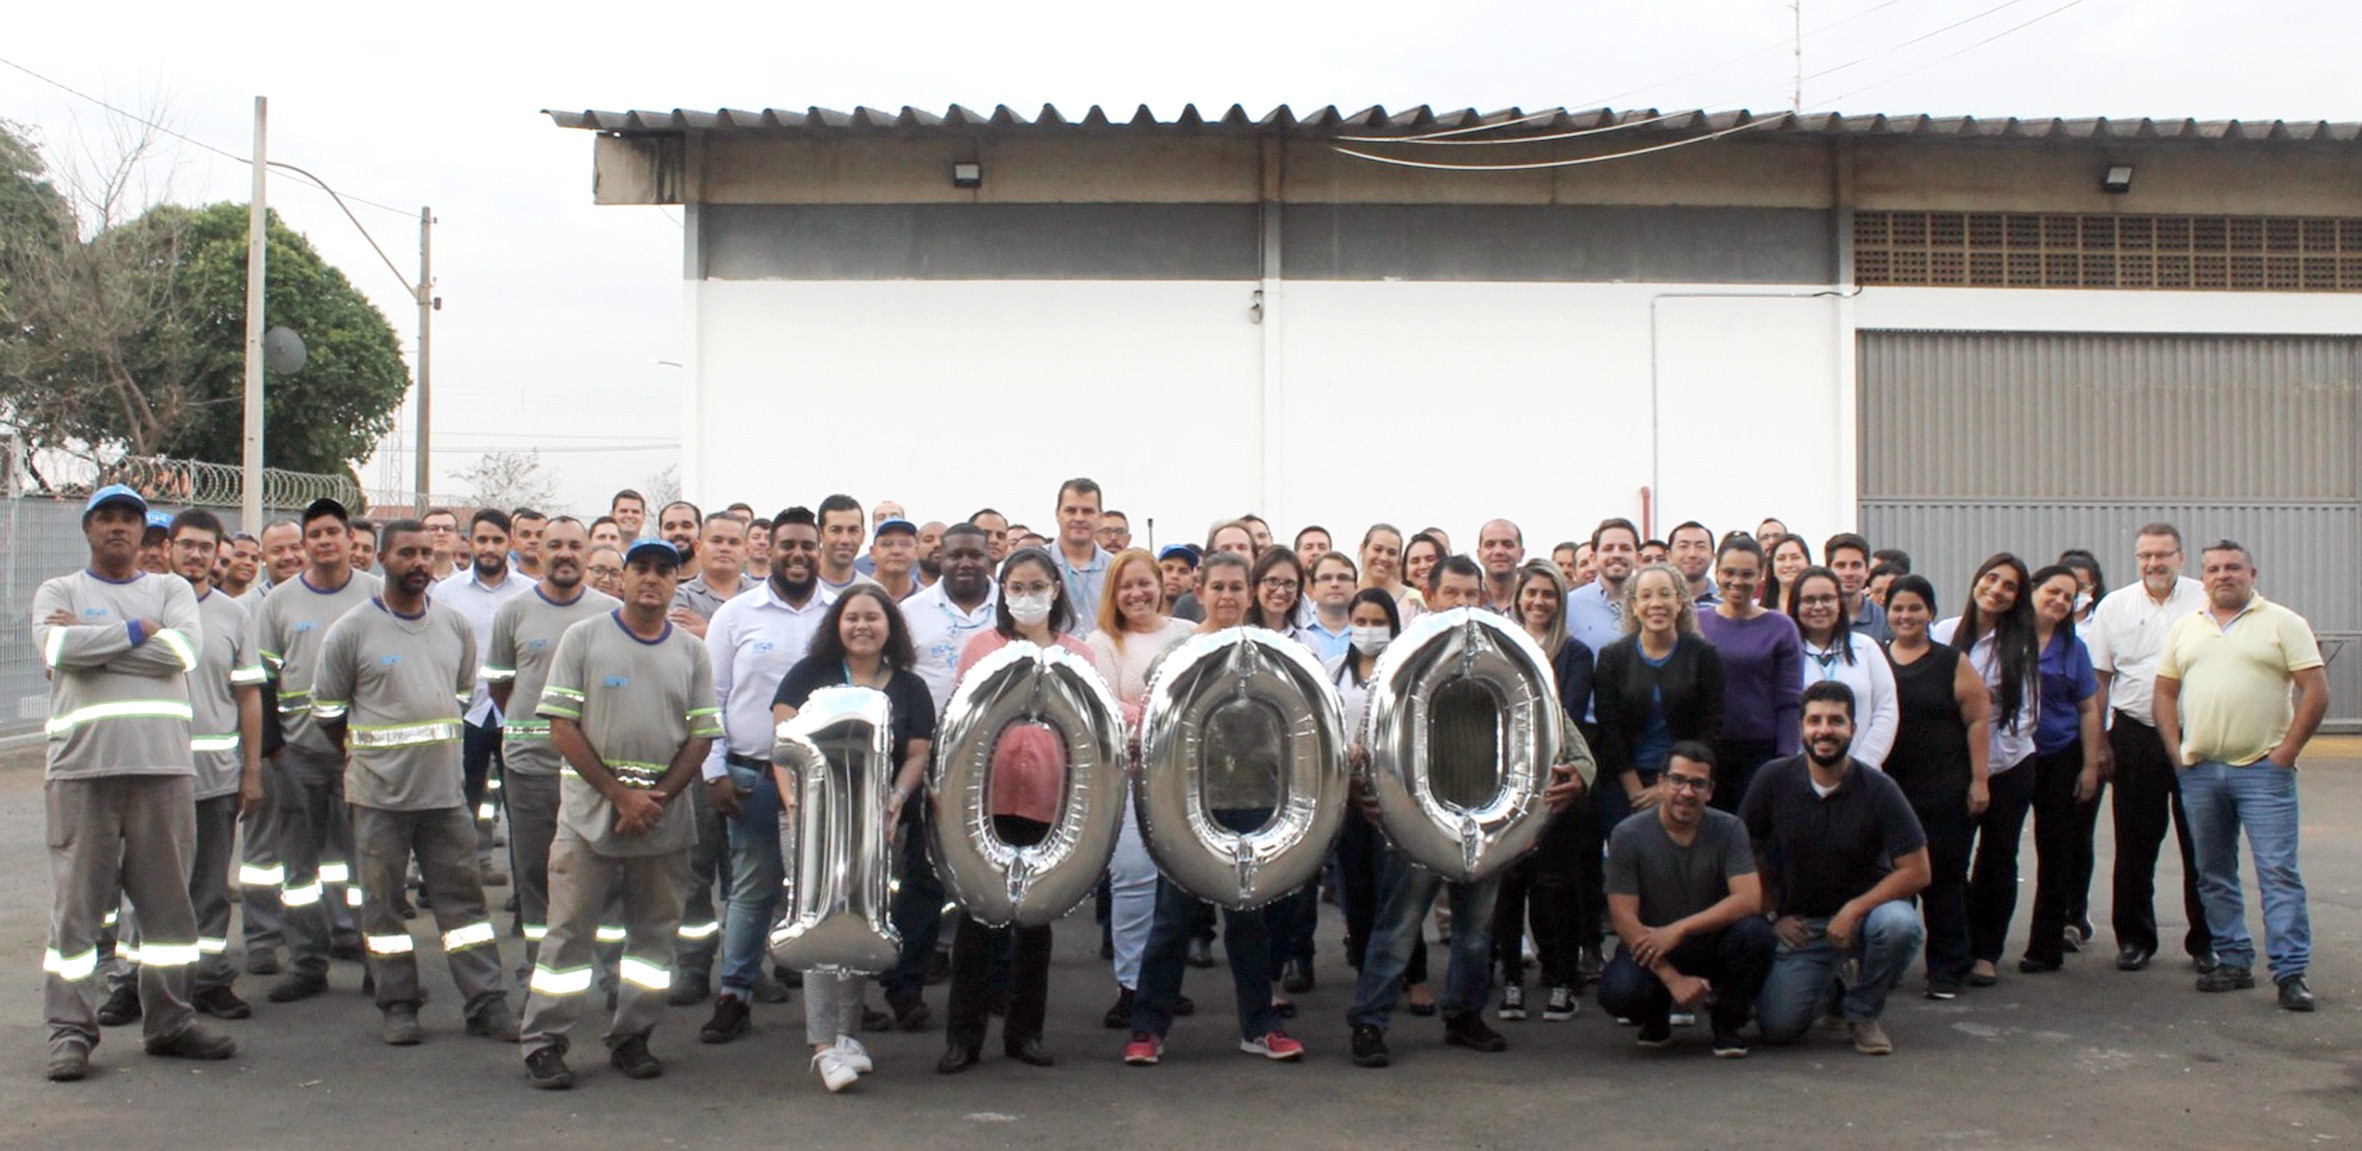 BRK completa 1.000 dias de trabalho sem incidentes com afastamentos e comemora